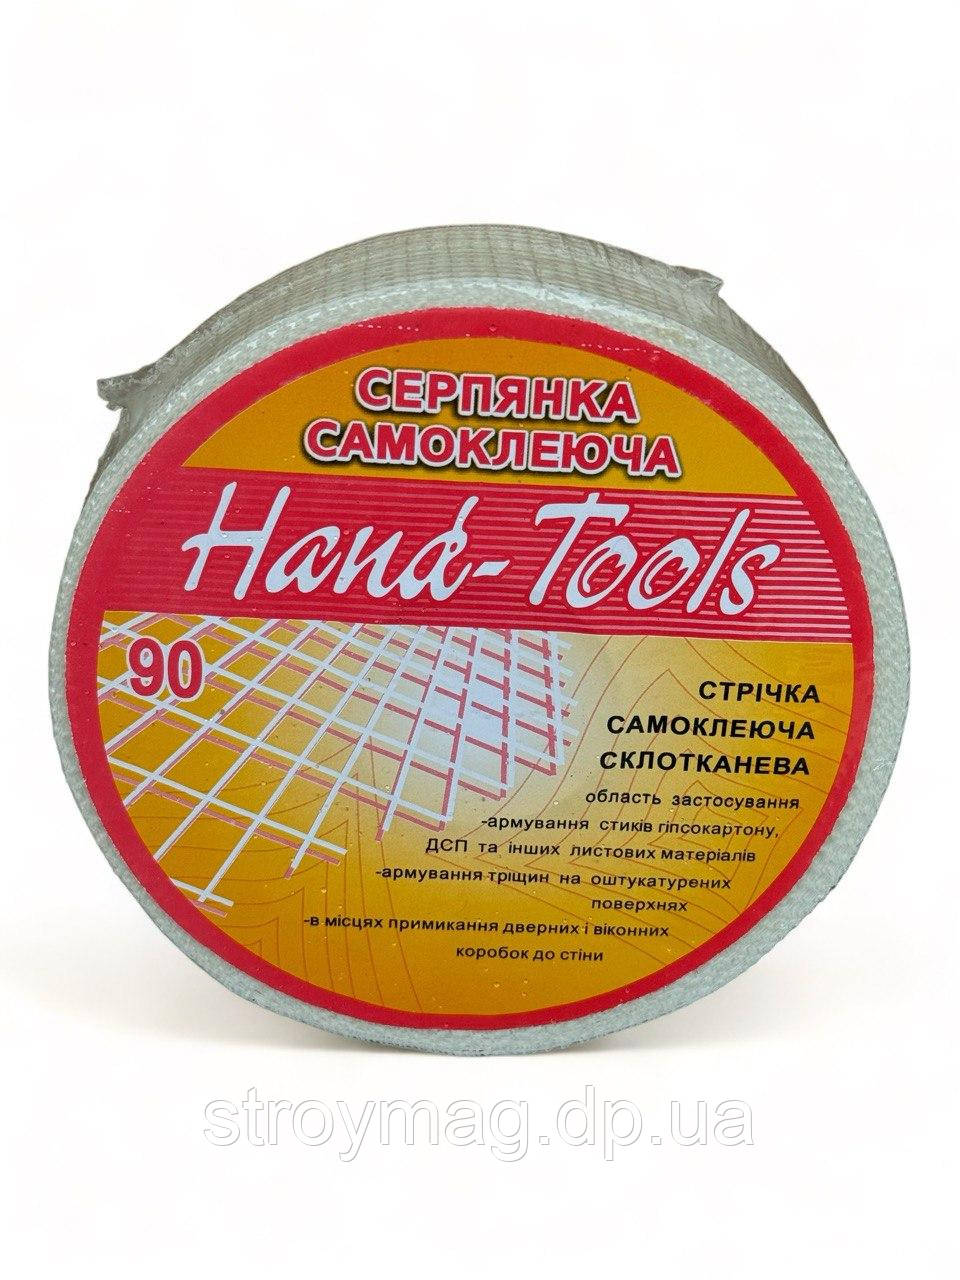 Серп'янка Hand-Tools 90 м (019-37)